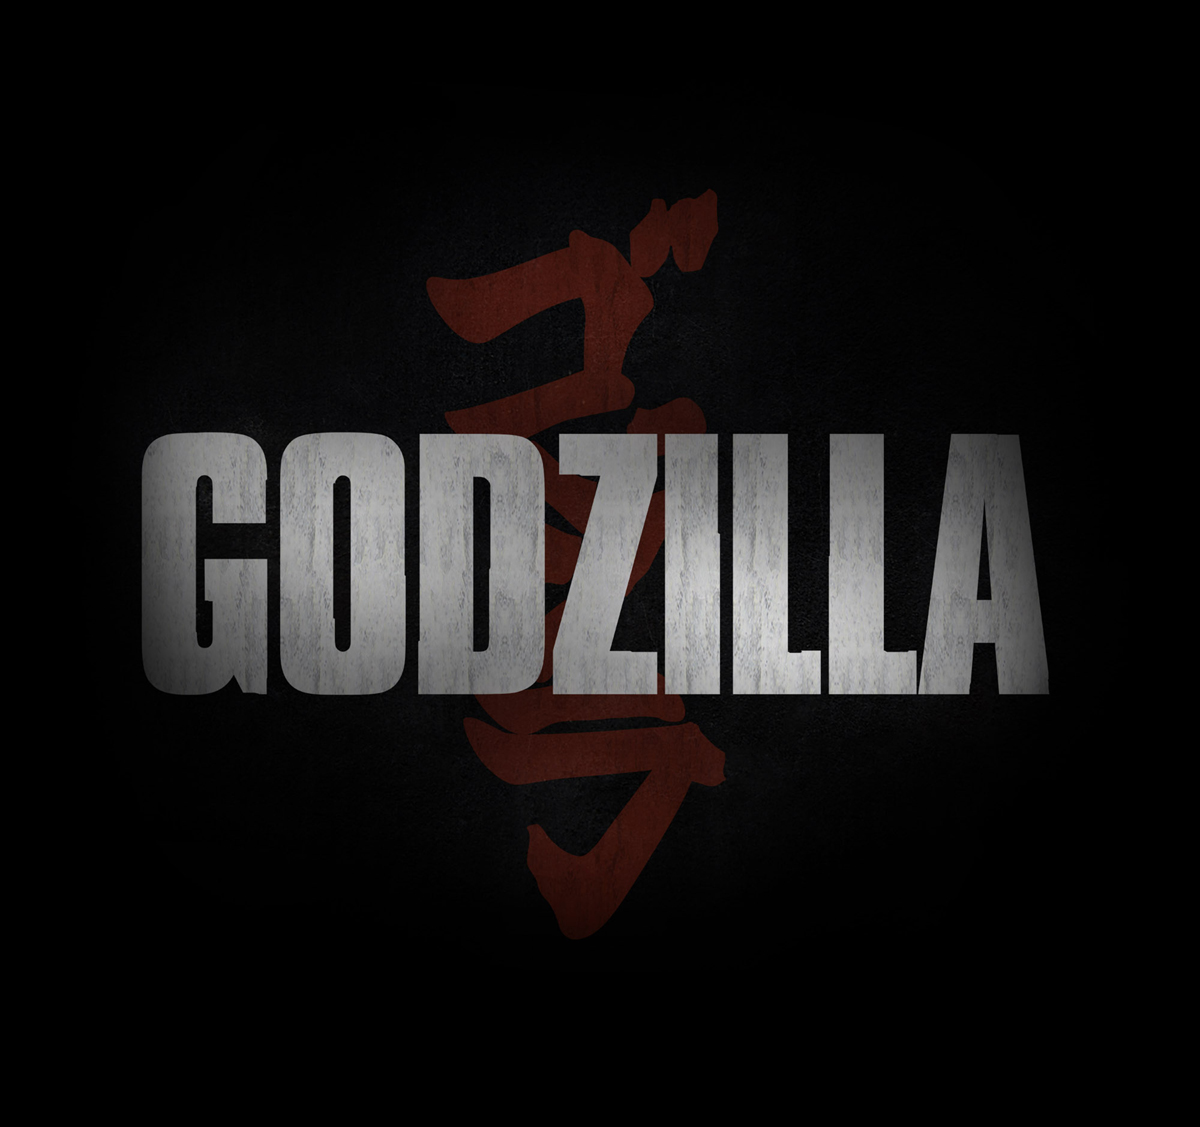 GODZILLA Trailer #2 Feb 27th (Rumored)